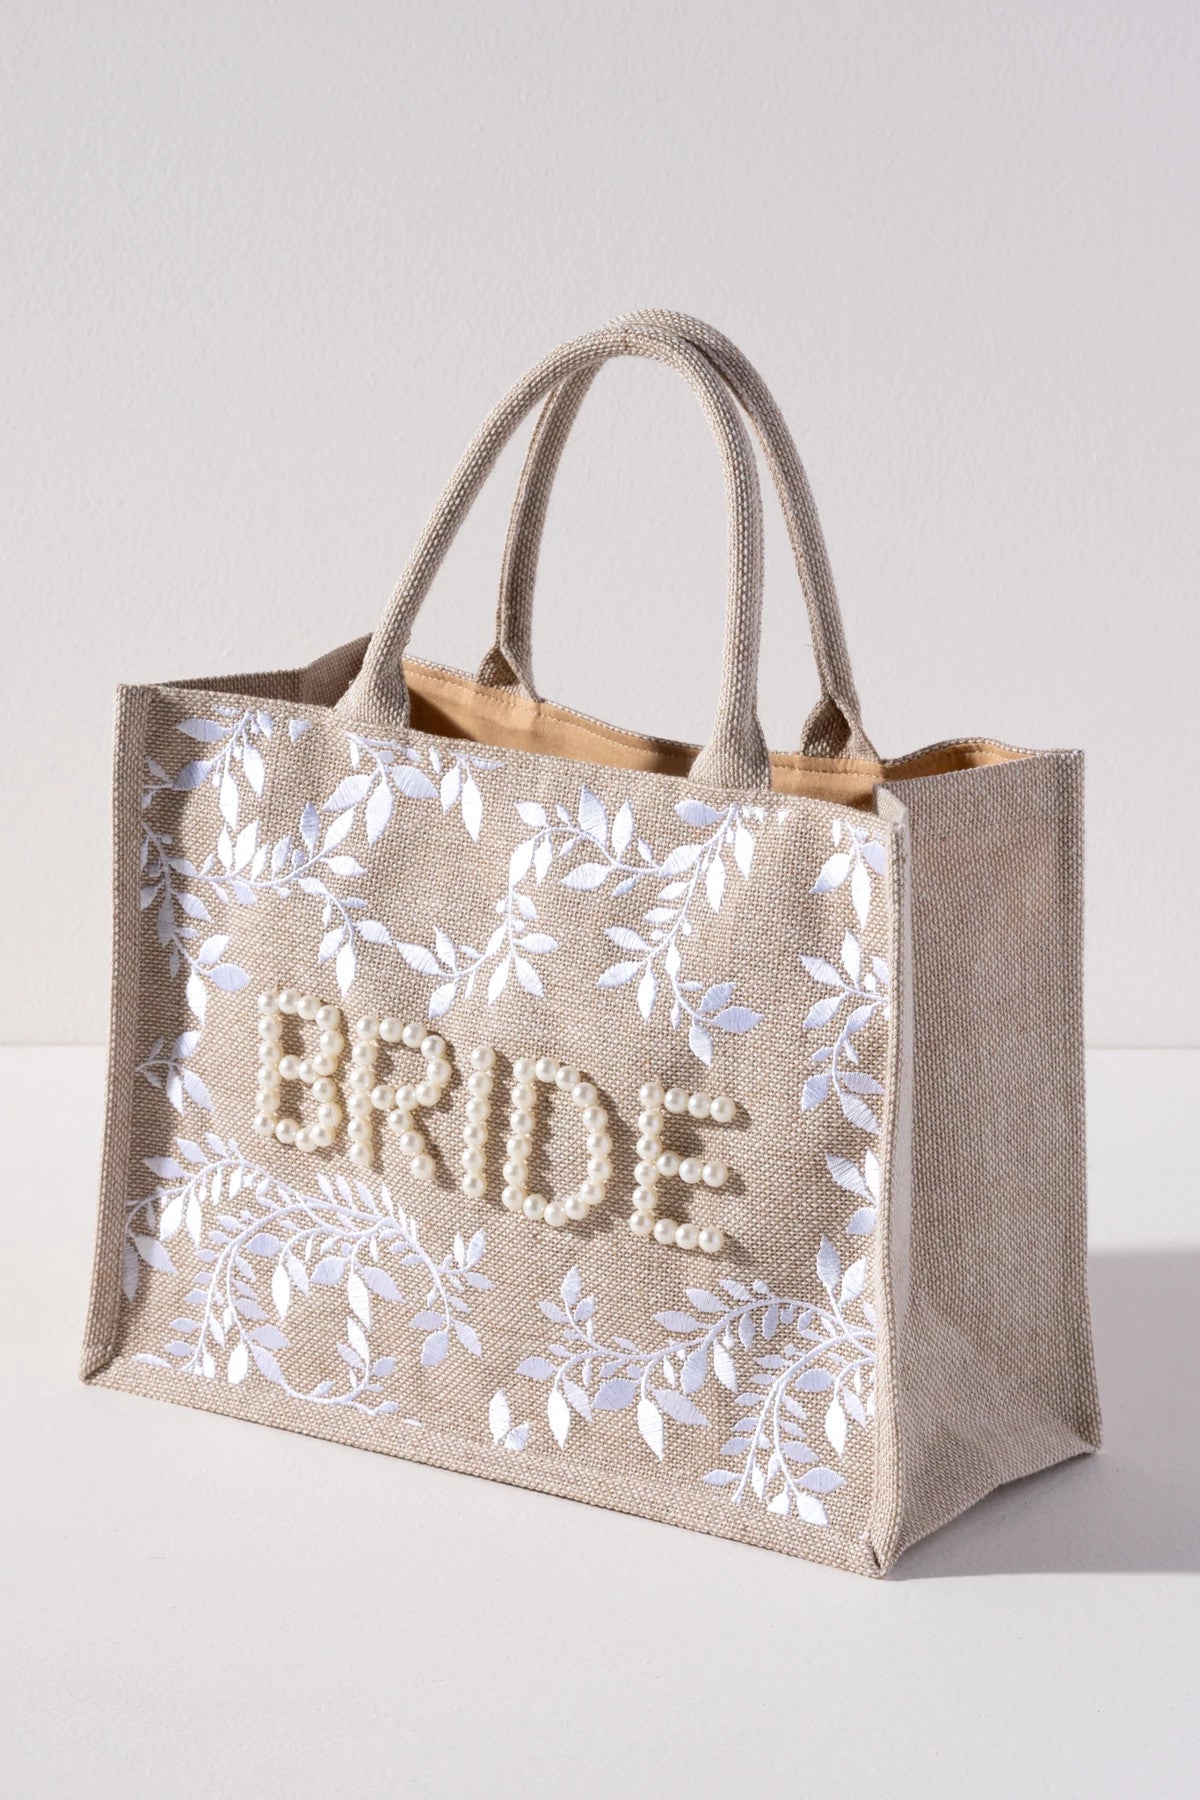 01-BK-009NA Shiraleah Bride Tote Bag